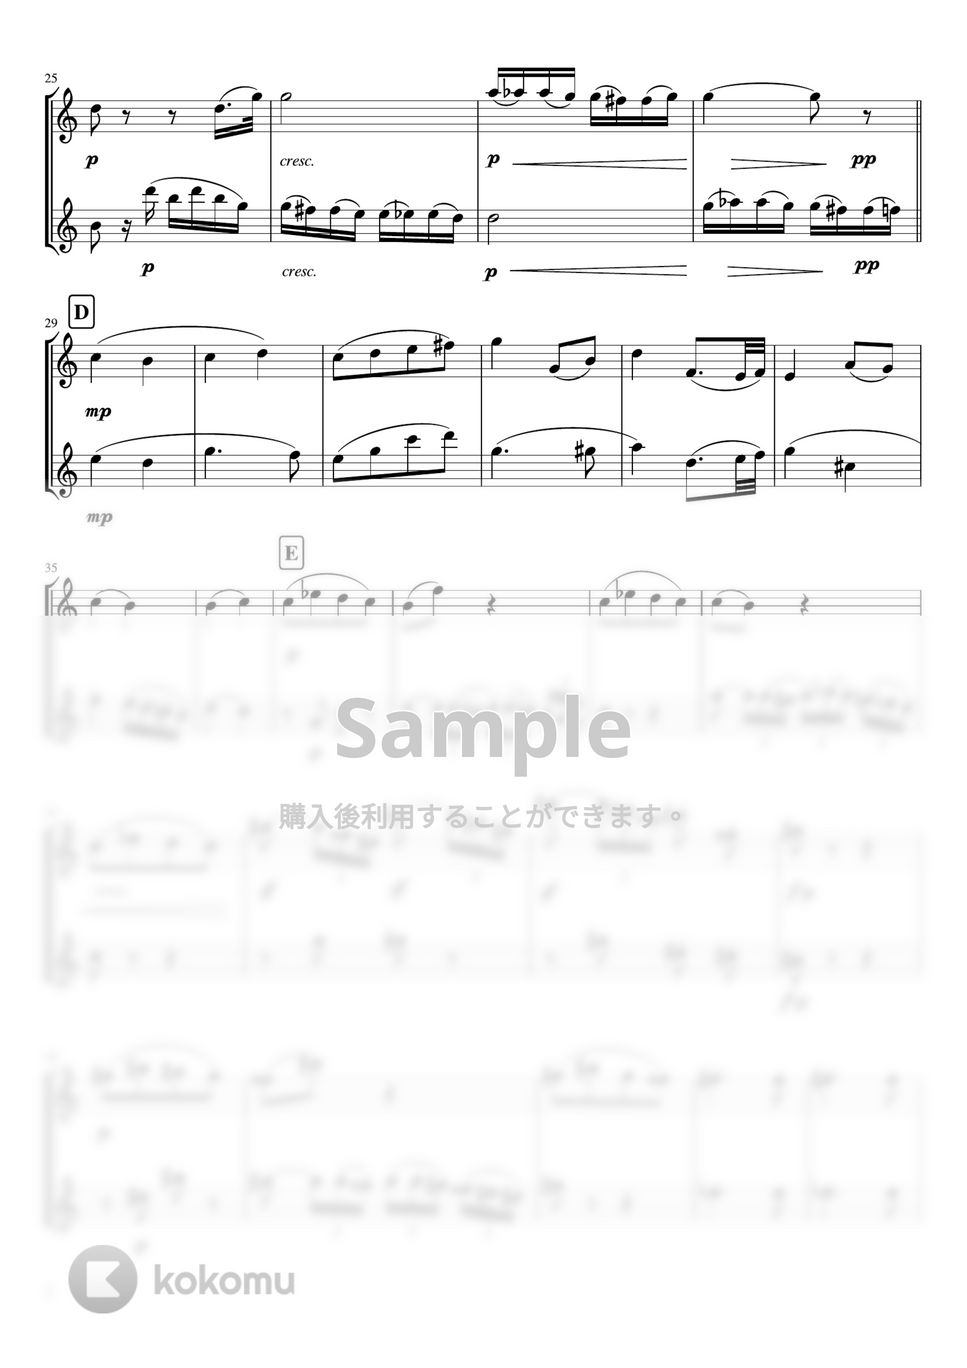 ベートーヴェン - ピアノソナタ第8番第2楽章「悲愴」 (フルート二重奏・無伴奏) by pfkaori